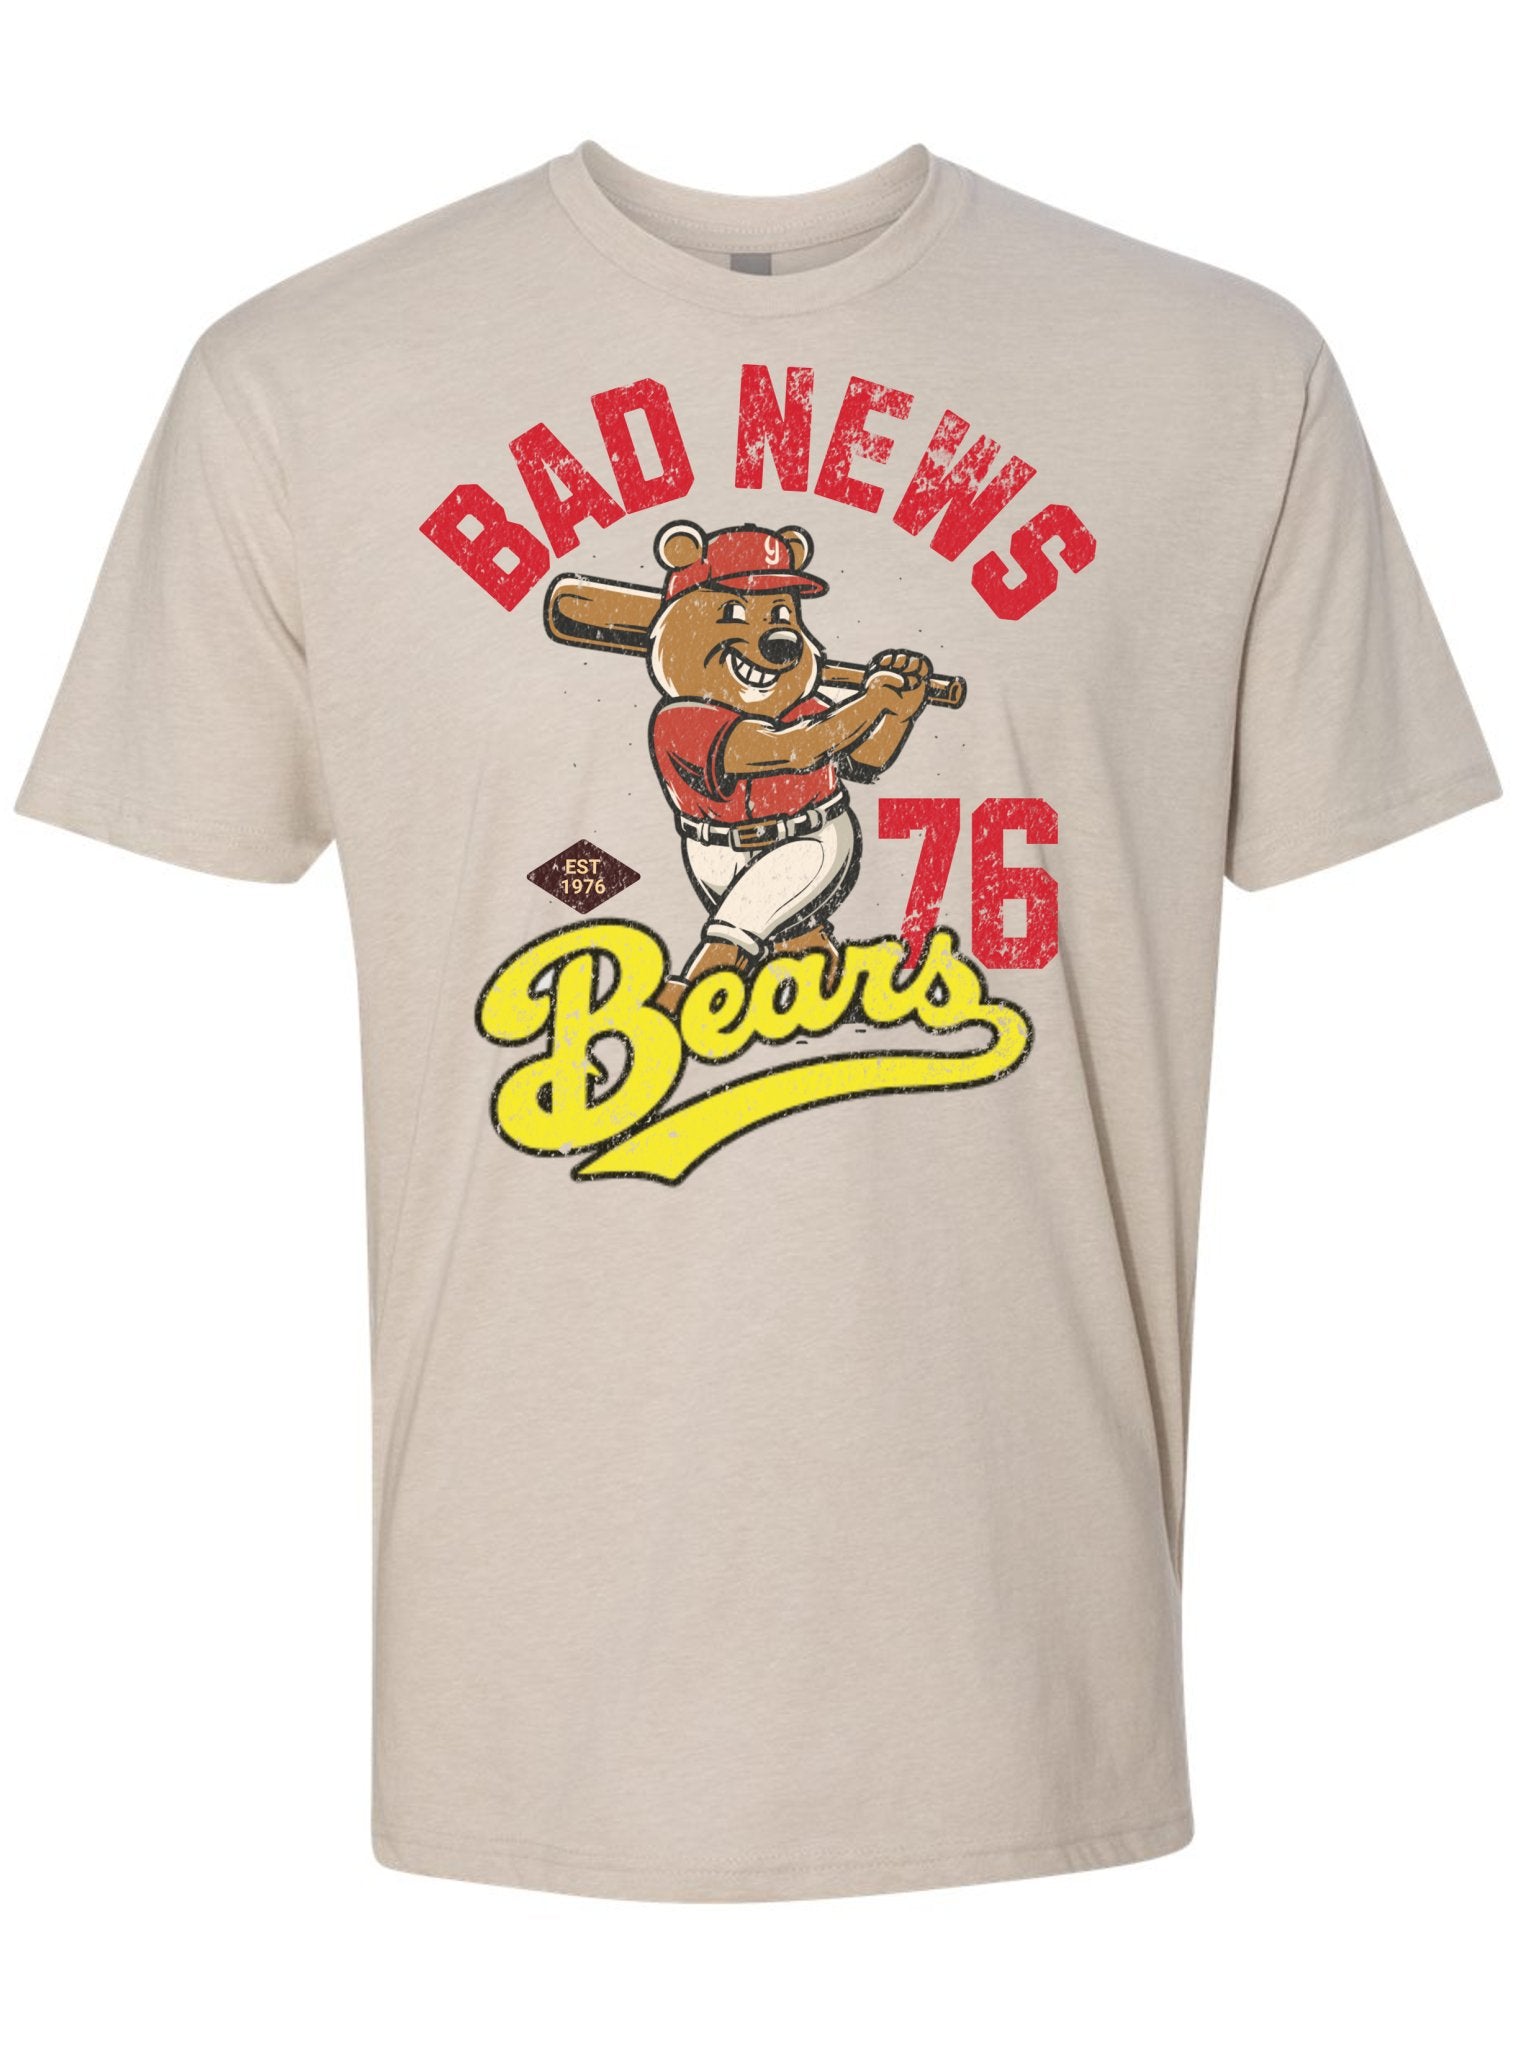 Retro Bad News Bears T-Shirt | Vintage Apparel -